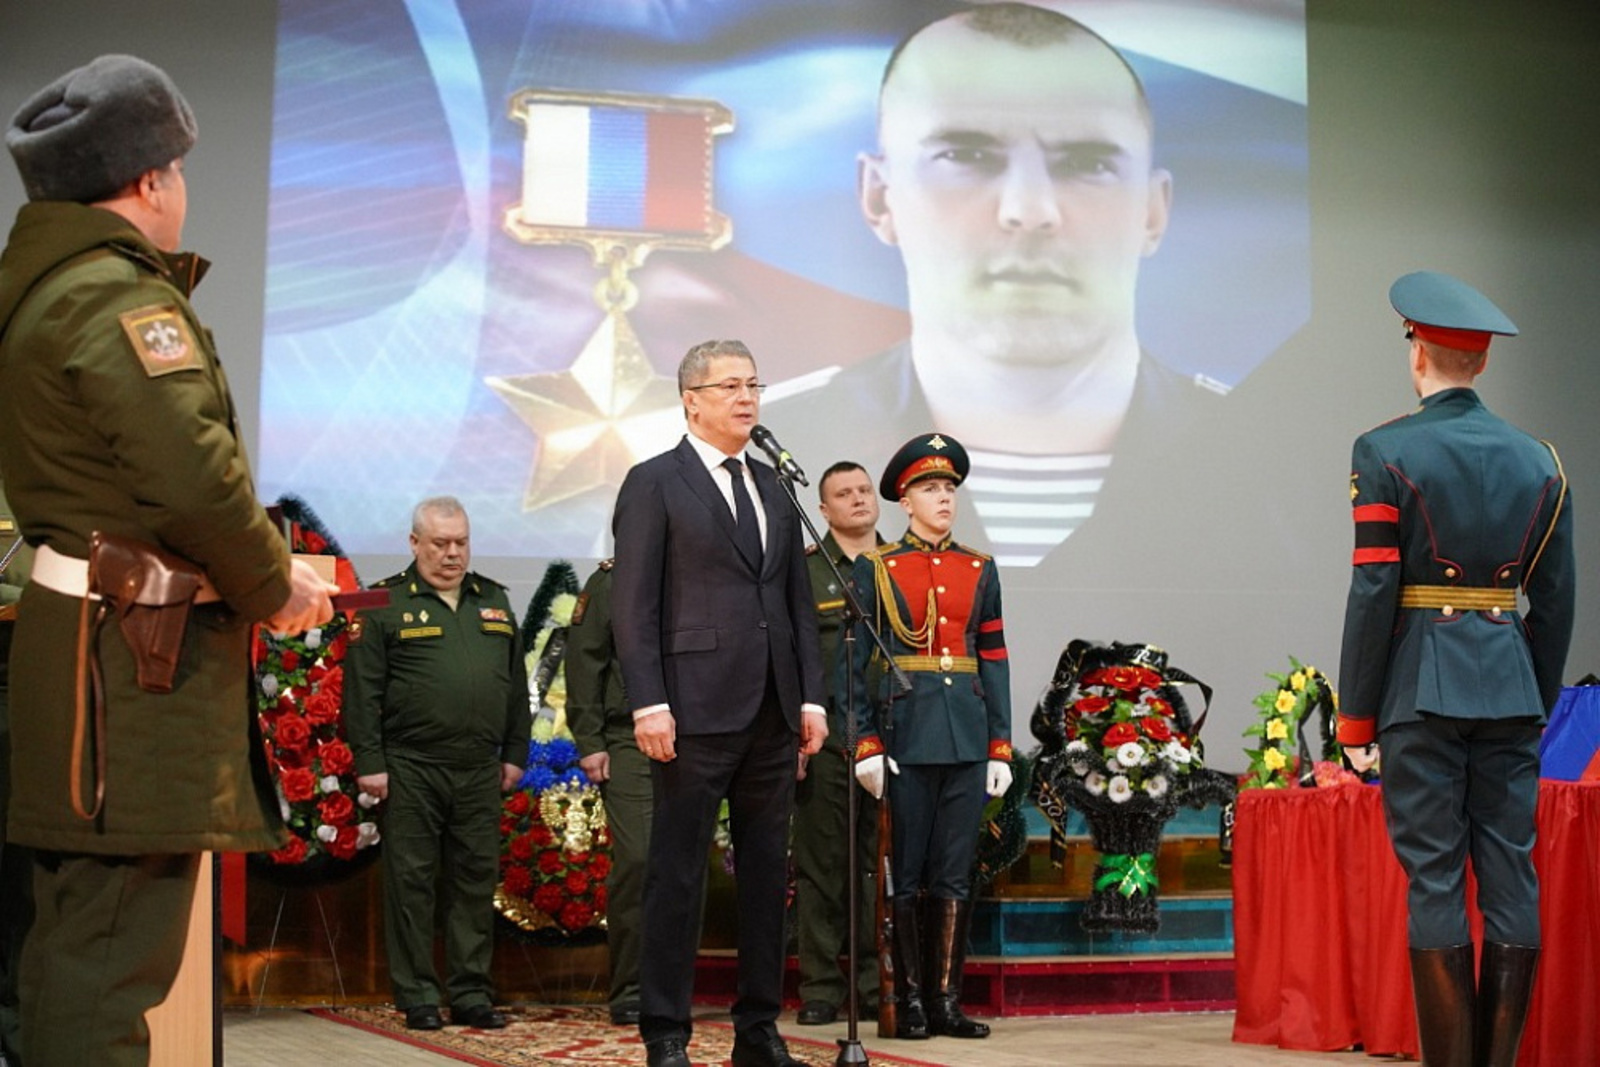 В Альшеевском районе сегодня прошла церемония прощания  с Героем России, старшиной Алмазом Сафиным